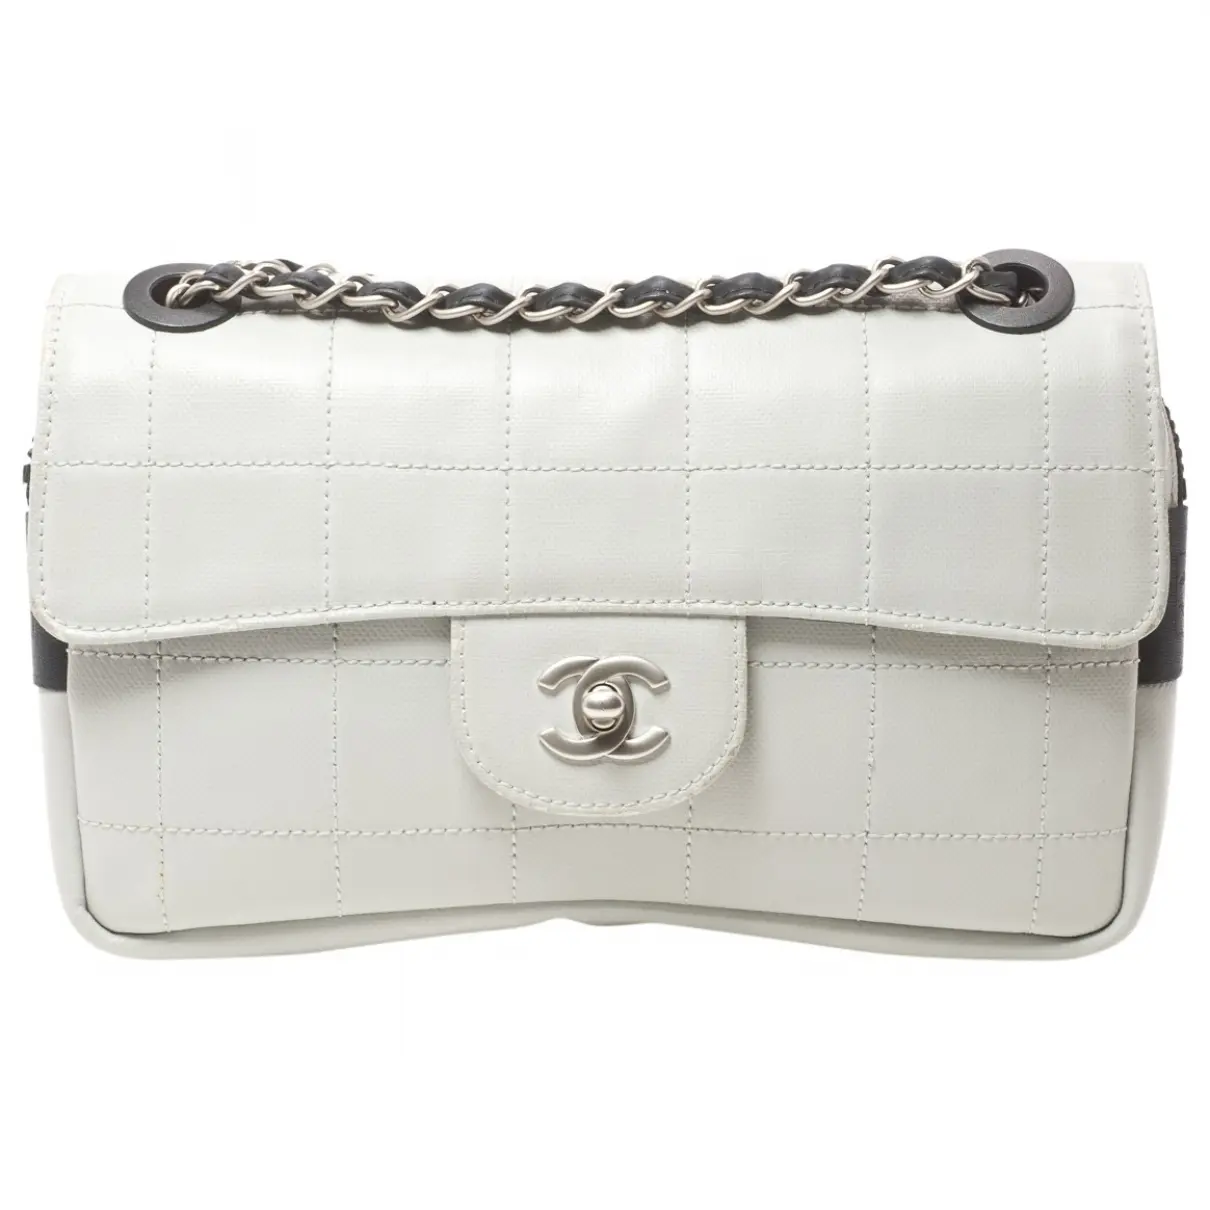 Grey Cloth Handbag Chanel